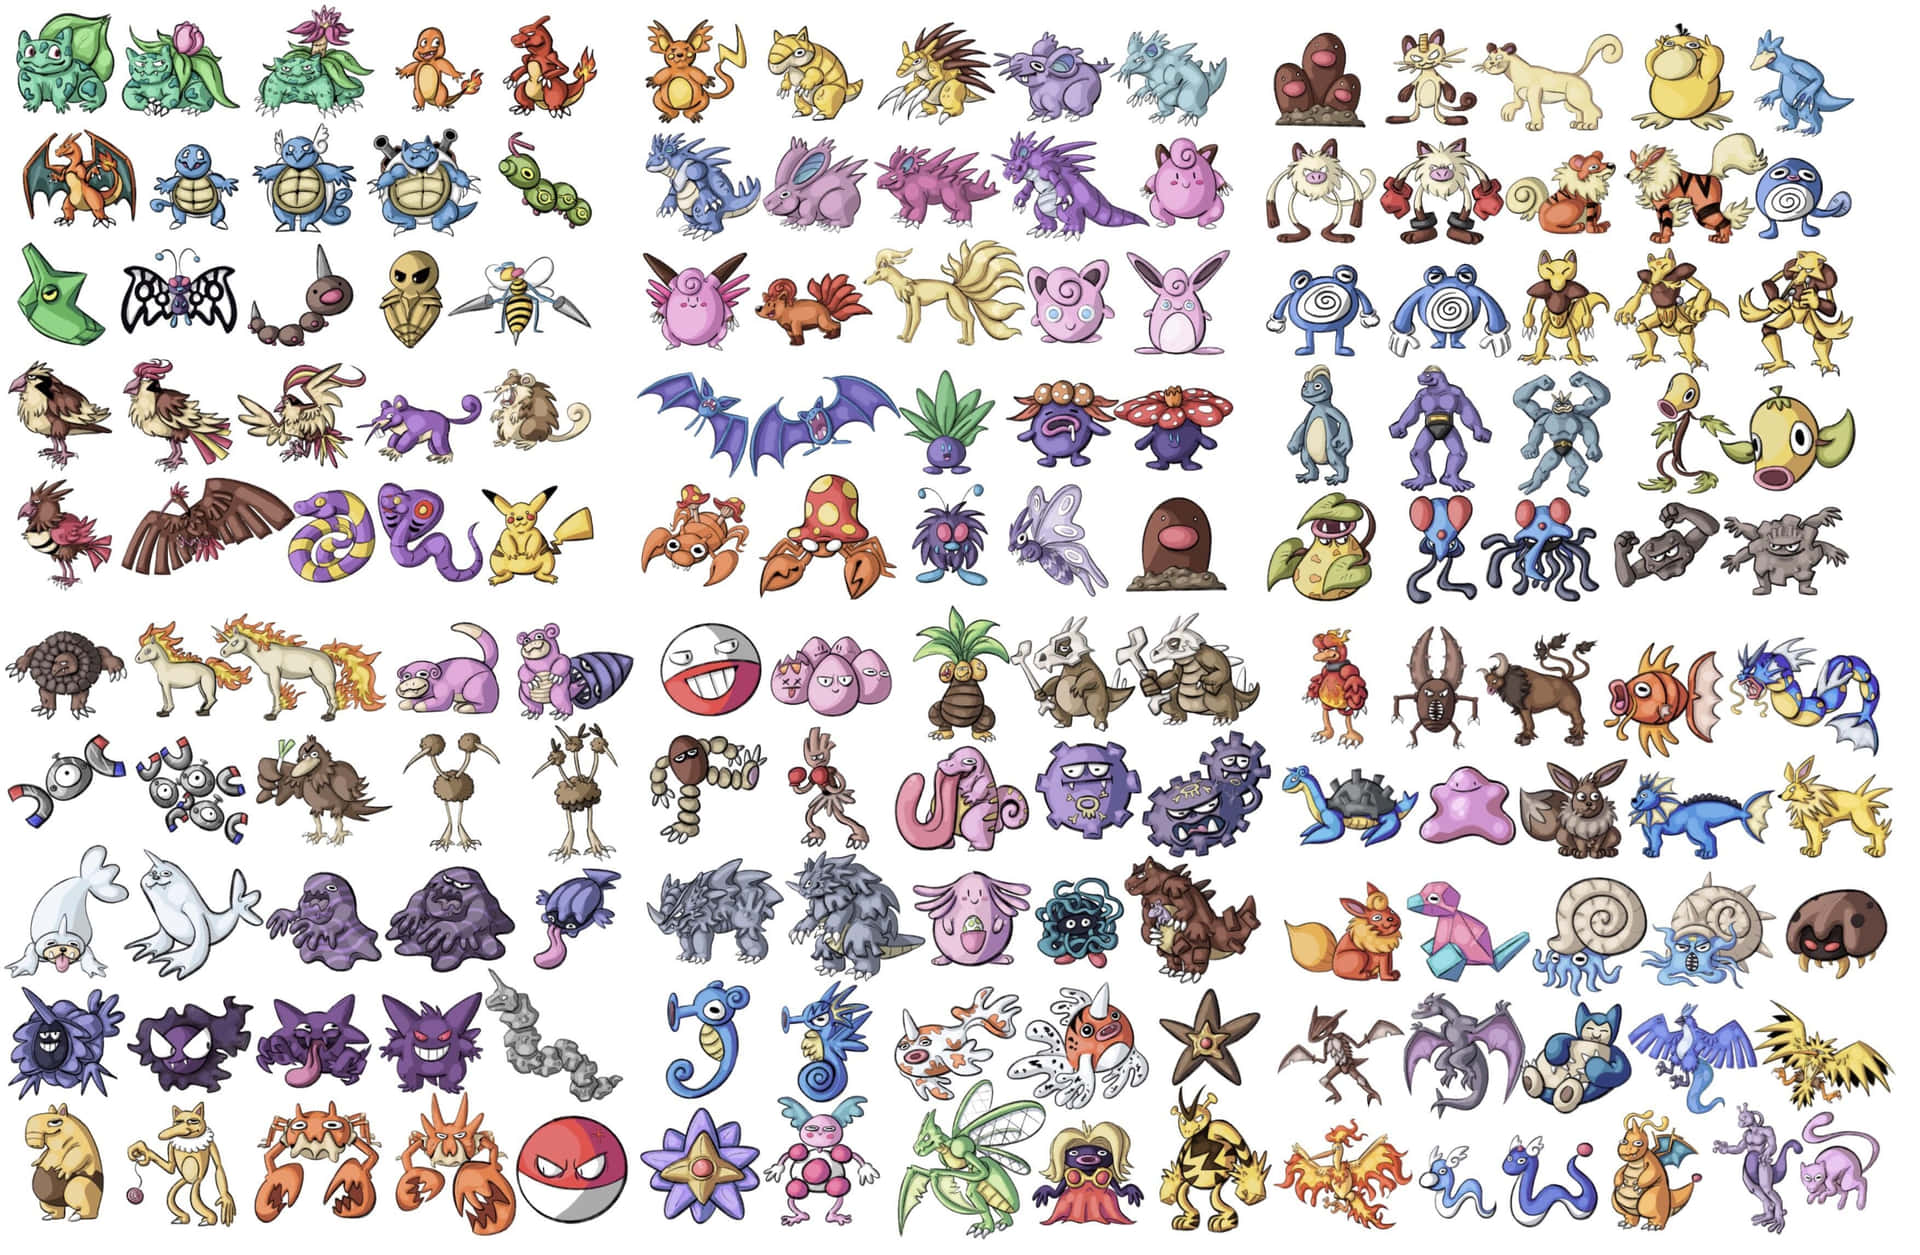 Pokemoneine Sammlung Verschiedener Pokemon-charaktere